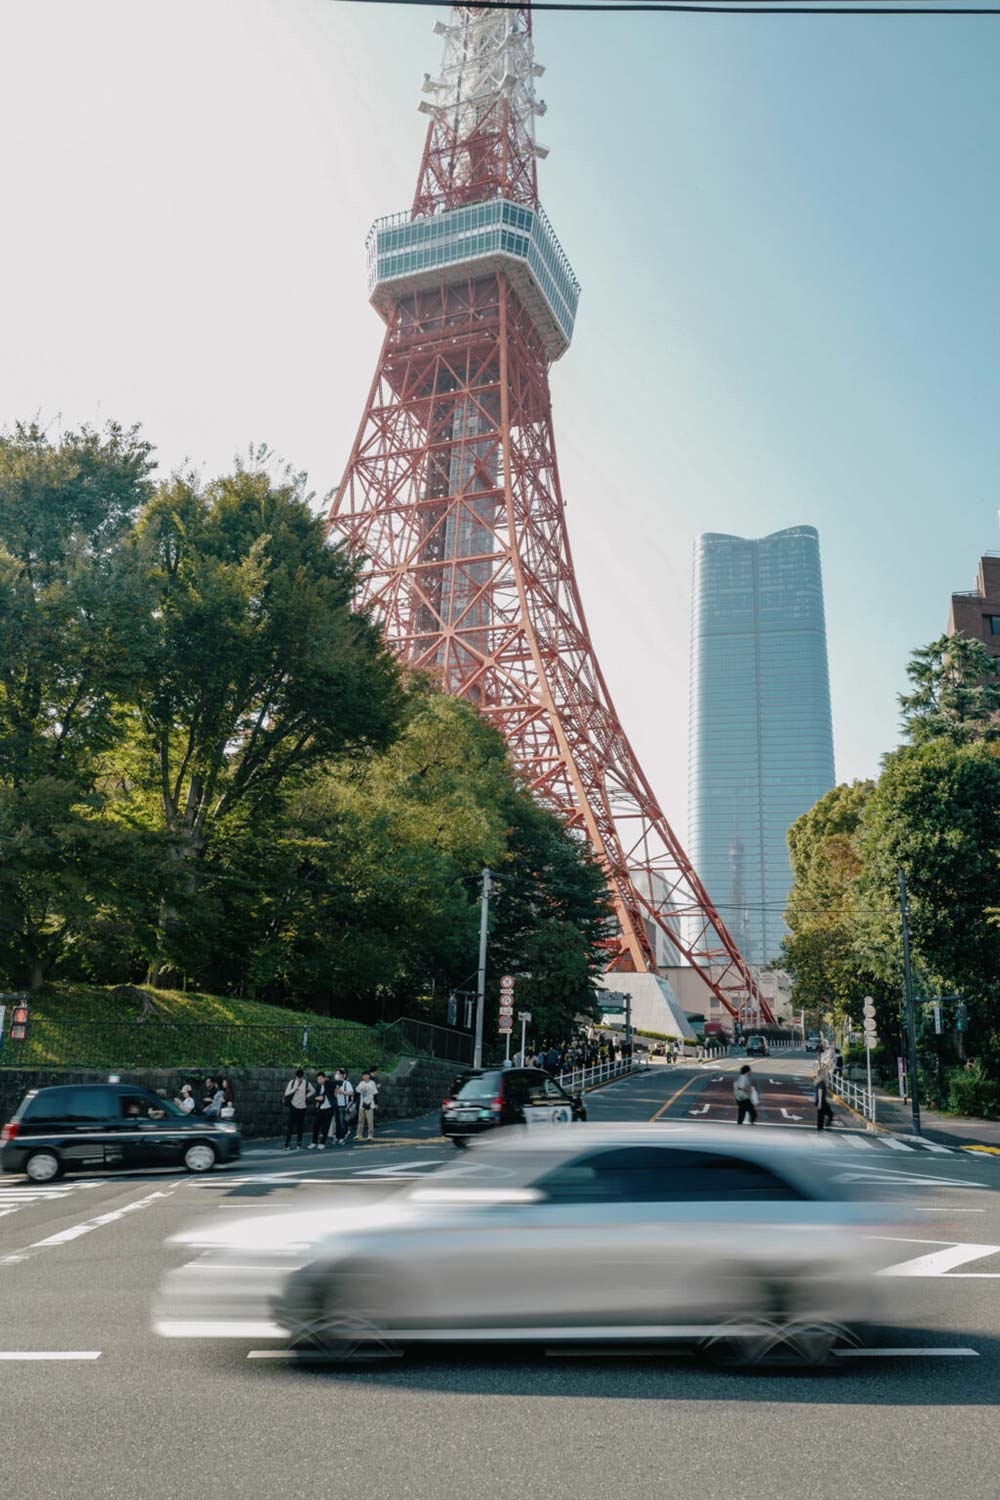 ふらりと東京タワー散歩。